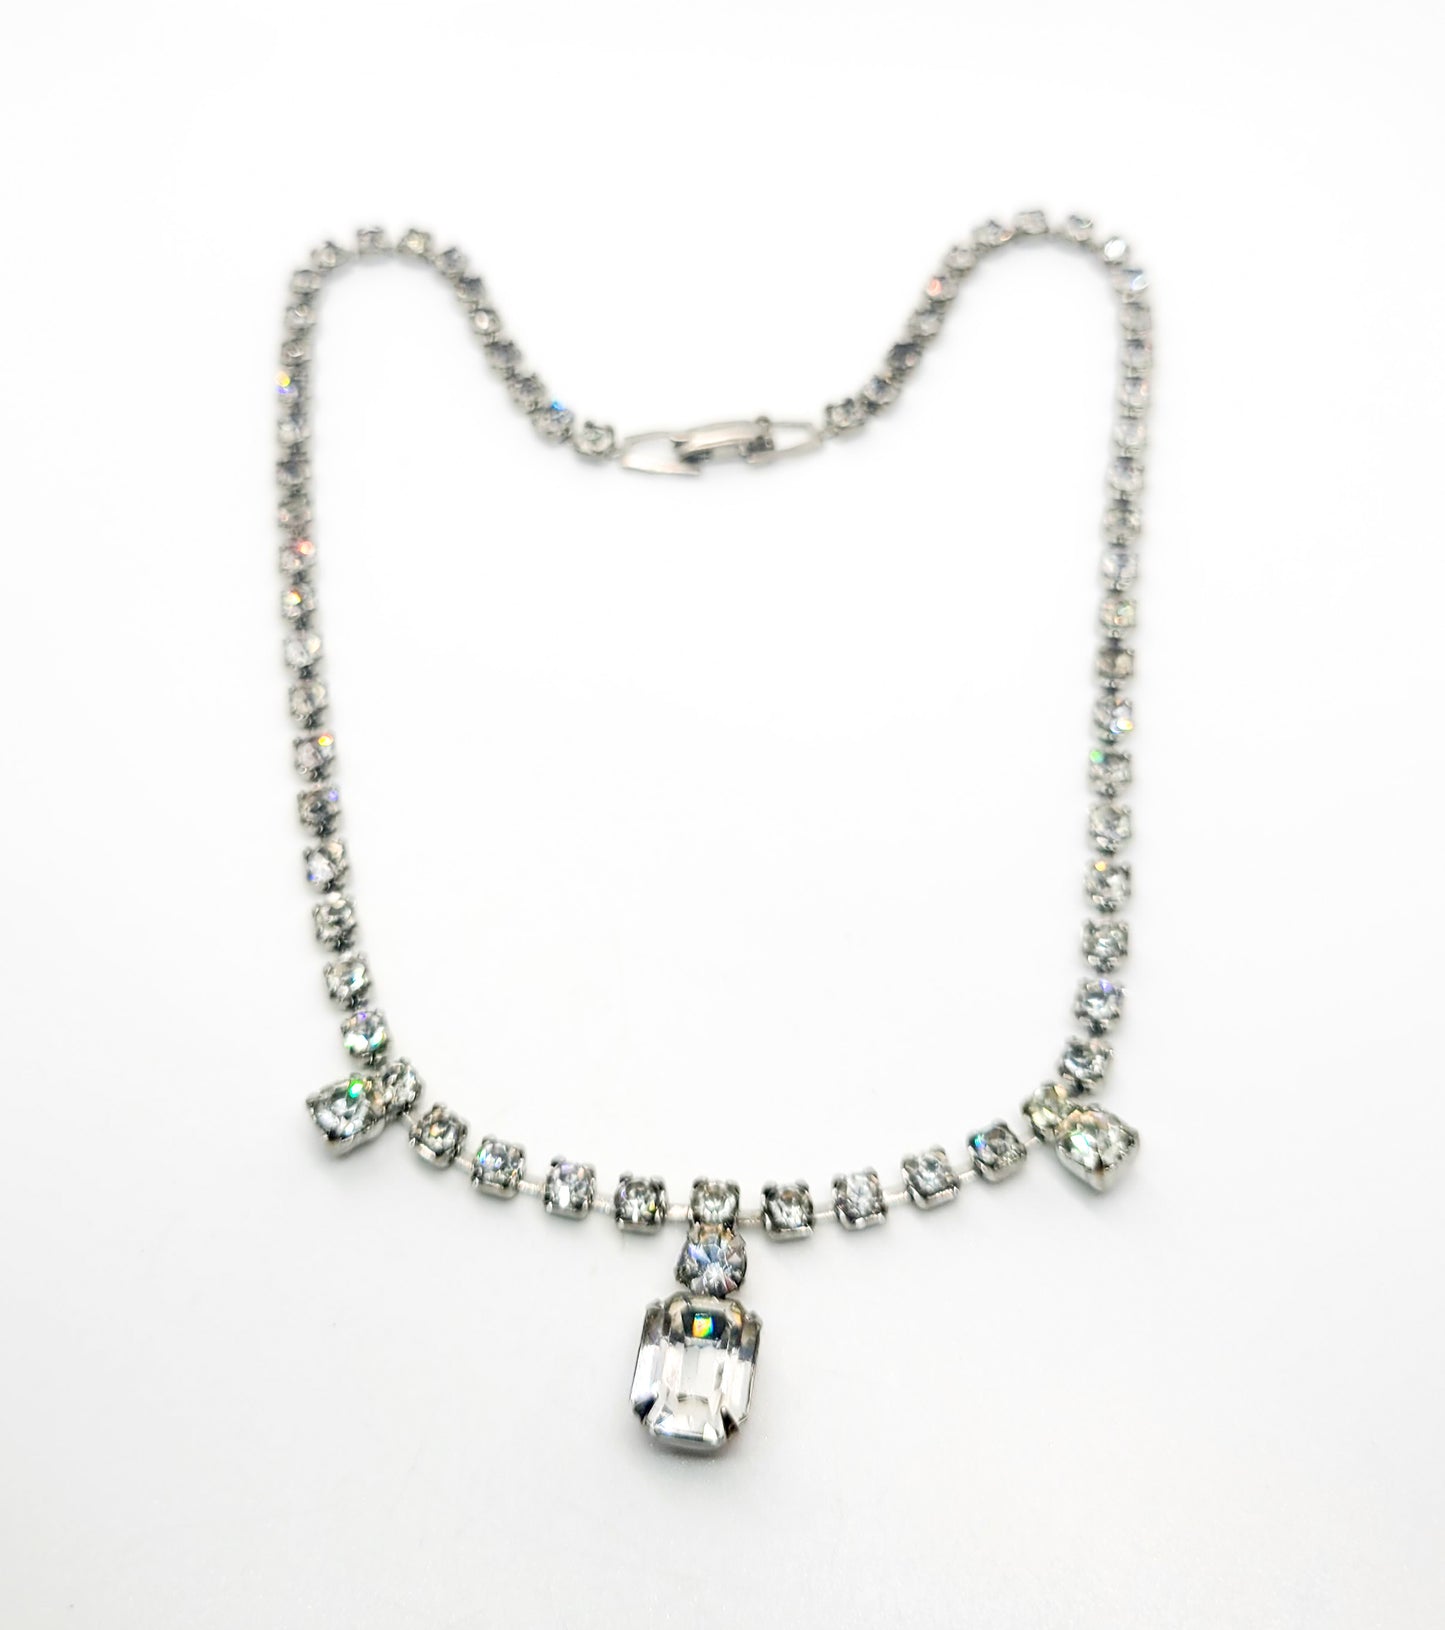 Emerald cut clear rhinestone dainty vintage collar necklace mid century